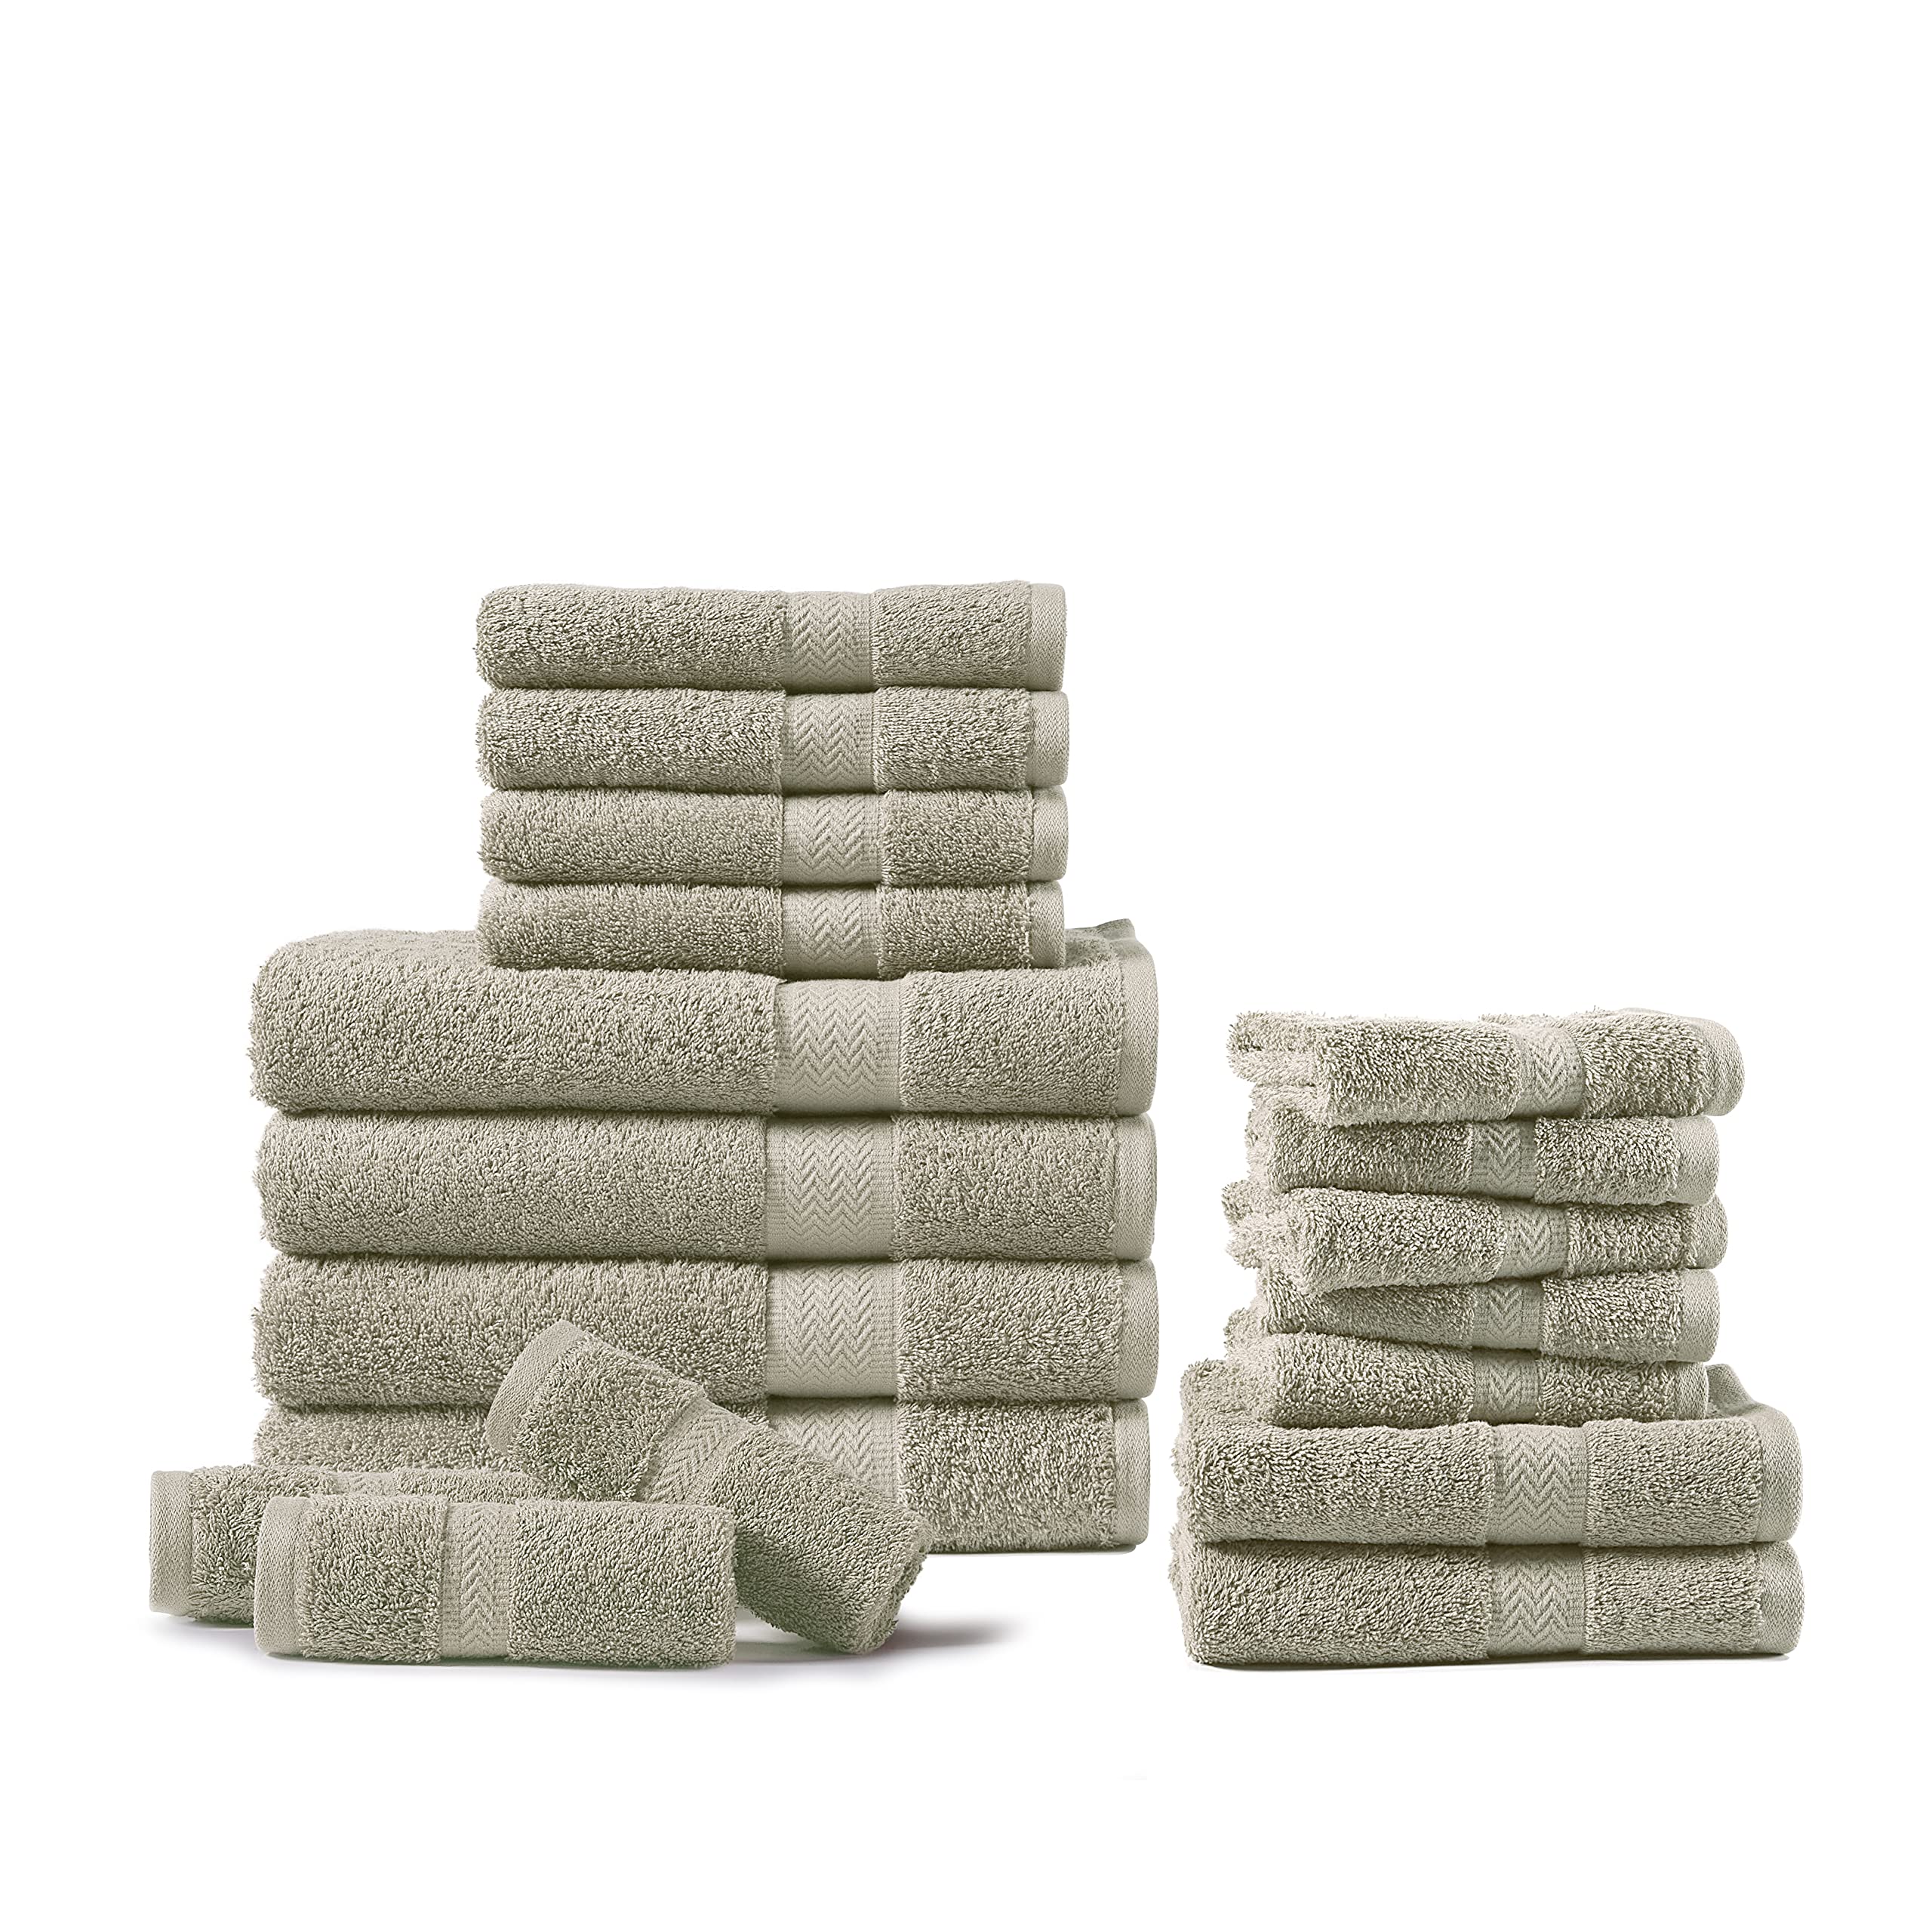 Bathroom Towels 12 Pcs 600 GSM - 100% Cotton 4 Bath Sheets, 4 Hand Towels  for Ba